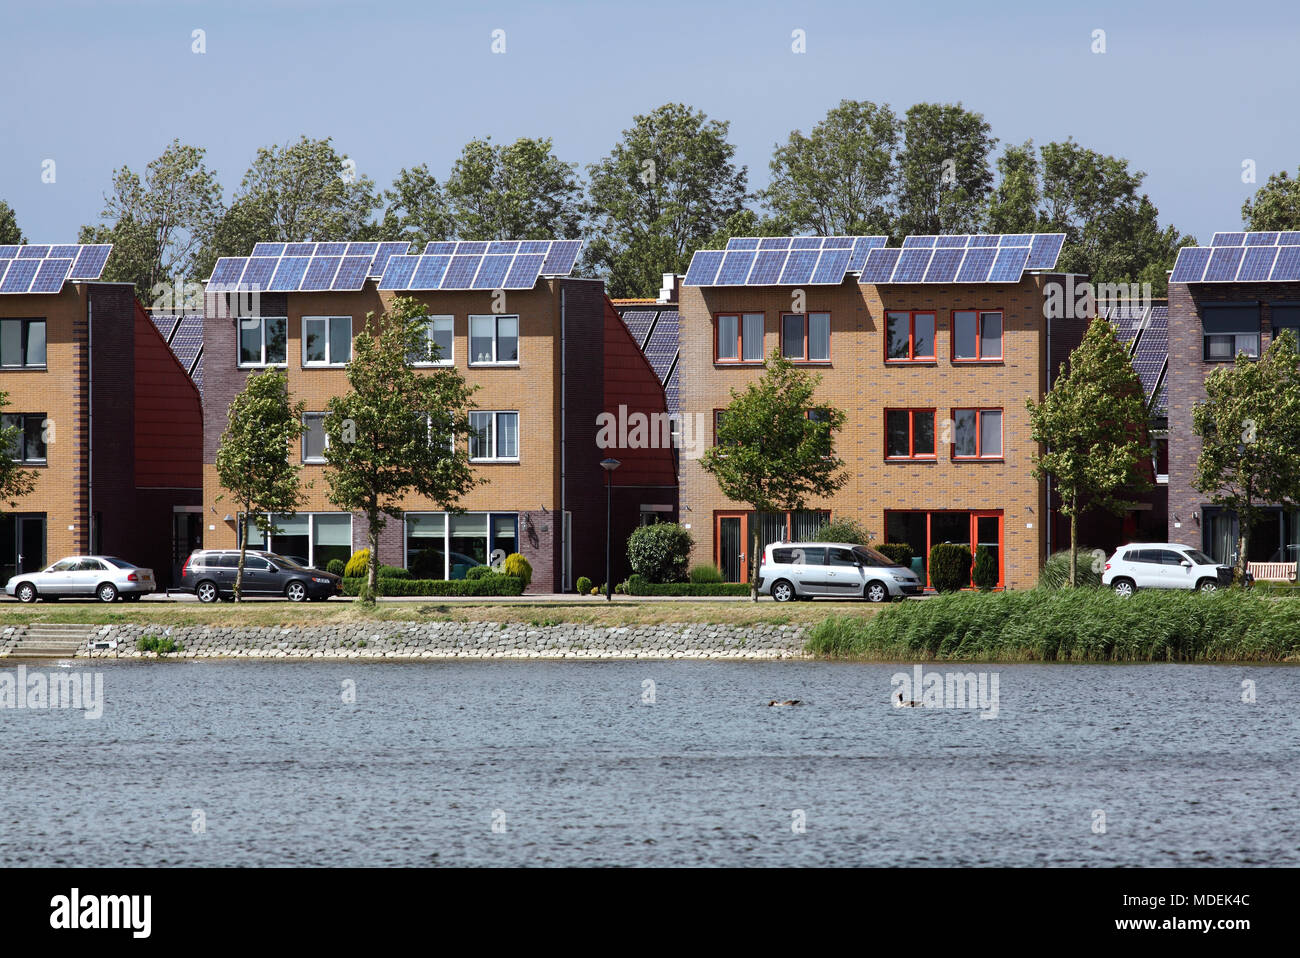 Casas rematadas con células fotovoltaicas en Stad van de Zon (Ciudad del Sol), un suburbio de Heerhugowaard sostenible, Holanda Septentrional, en los Países Bajos. Foto de stock